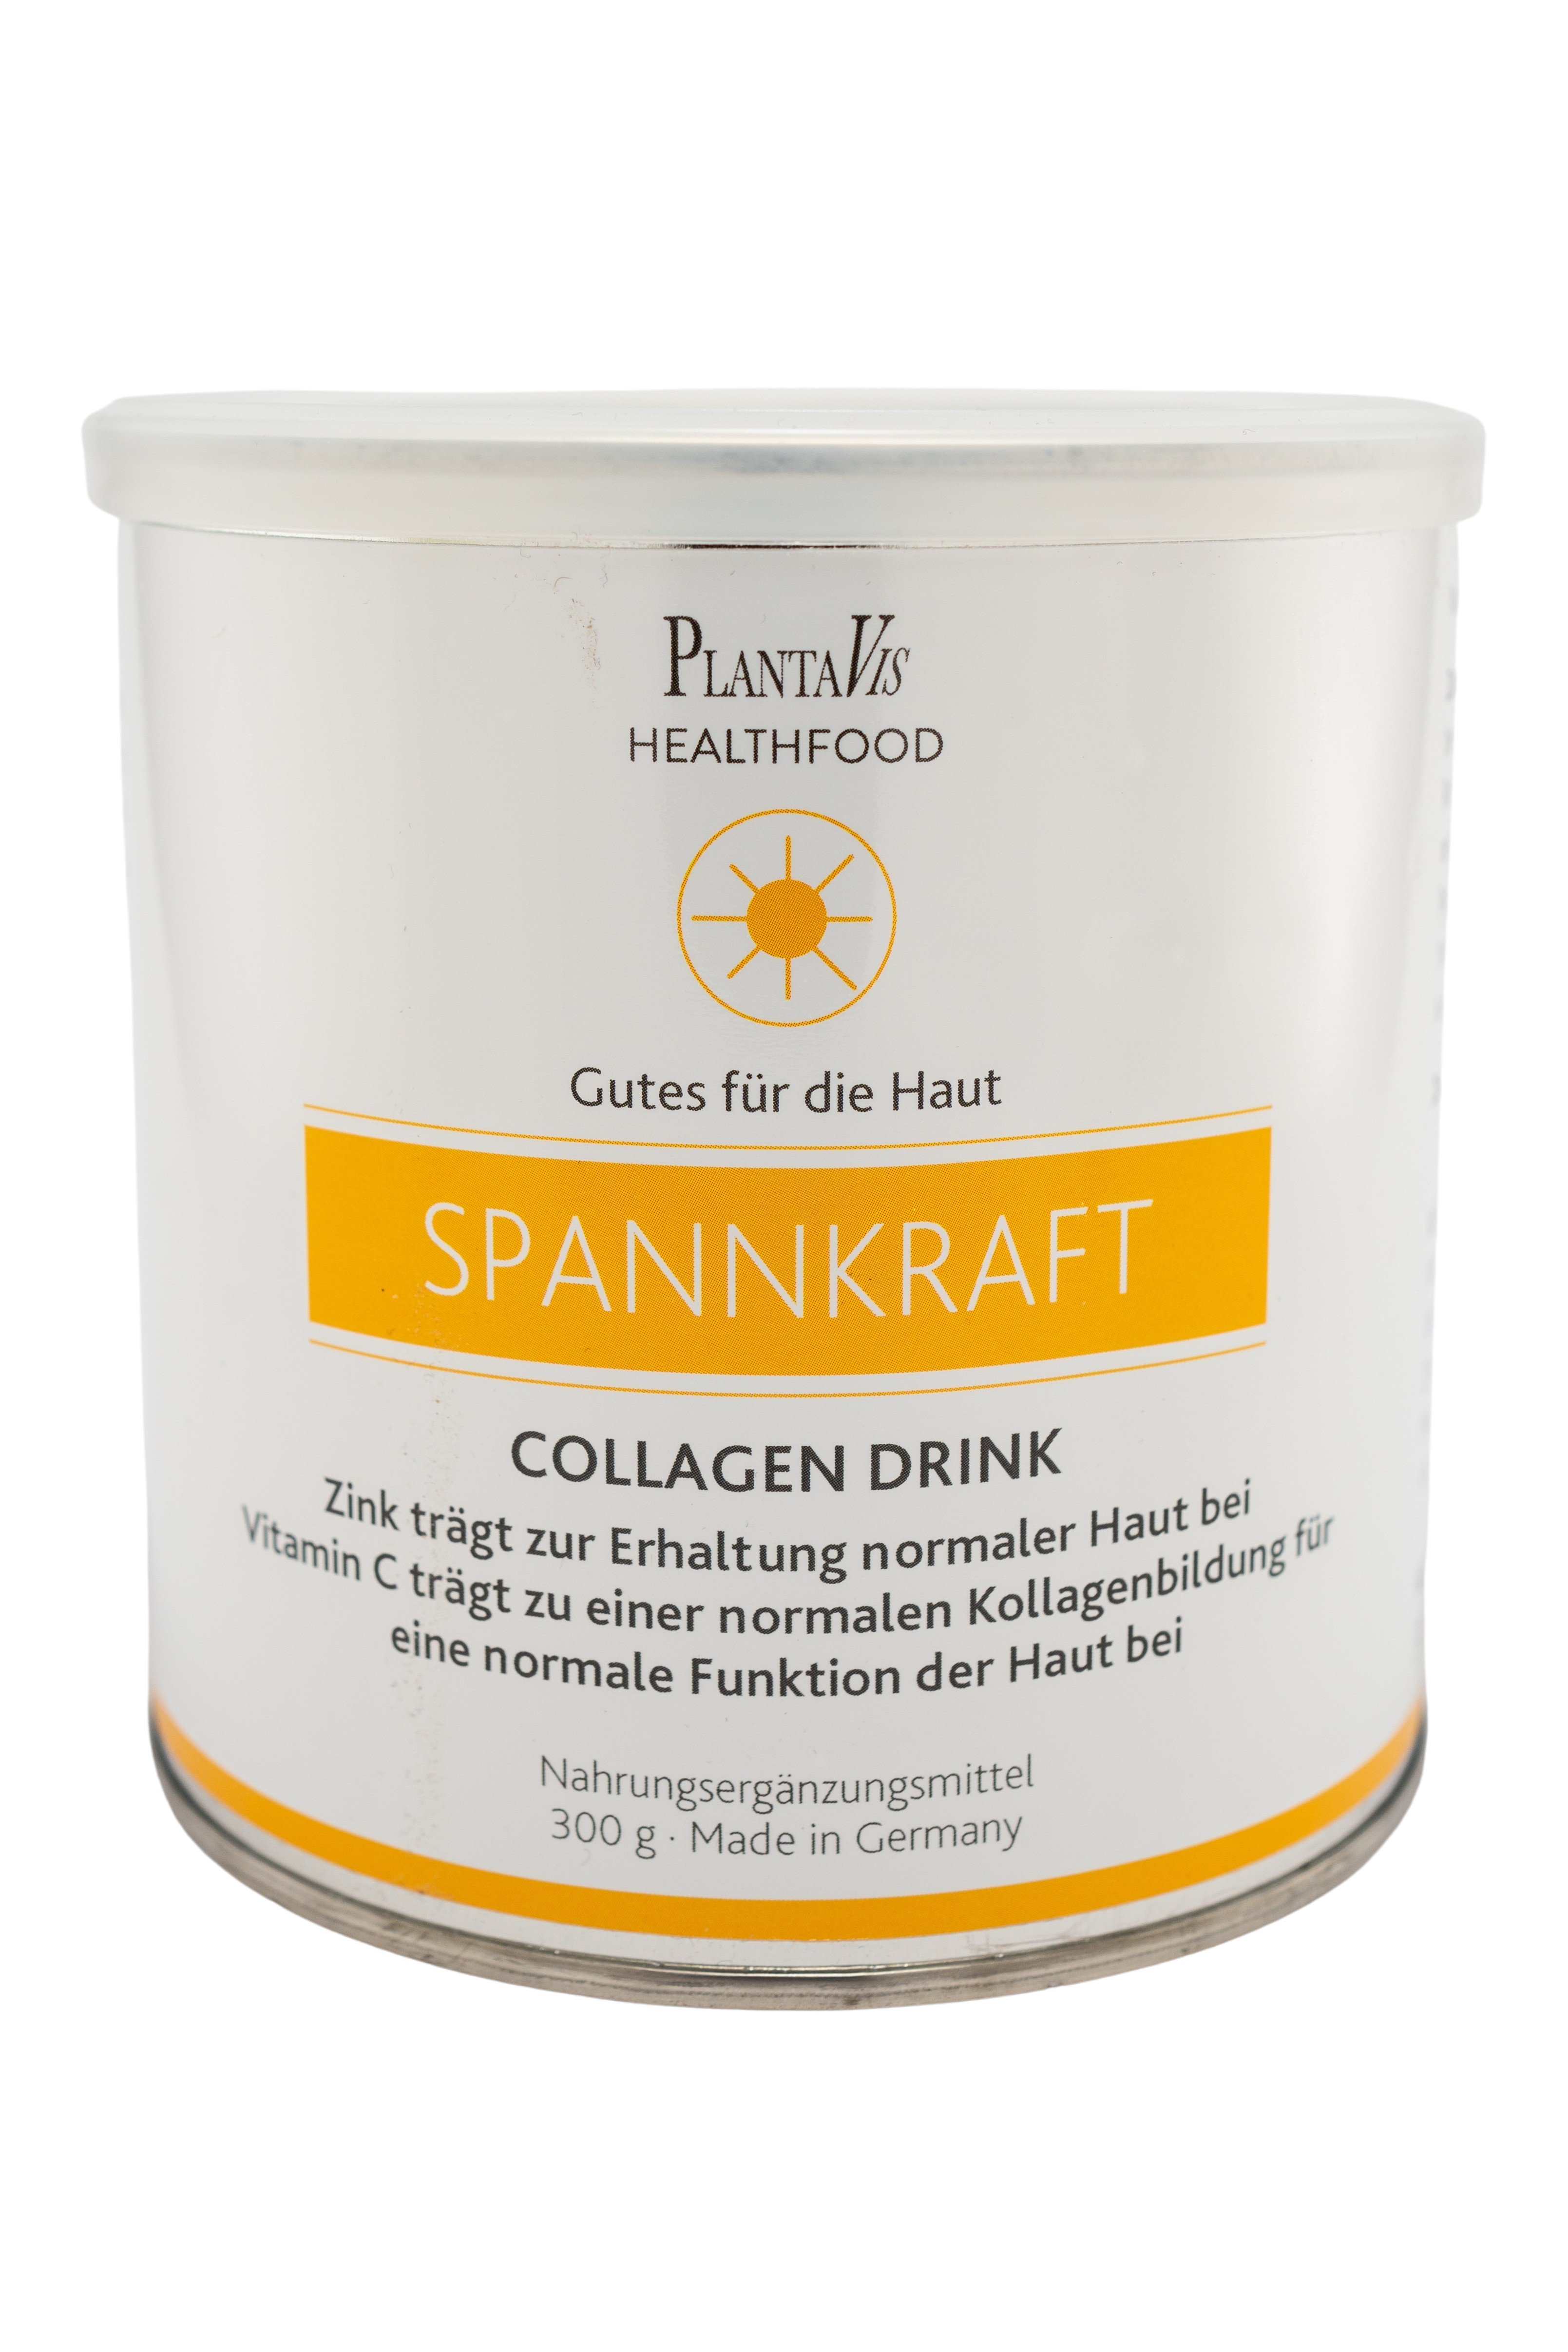 SpannKraft - Collagen Drink - Gutes für die Haut